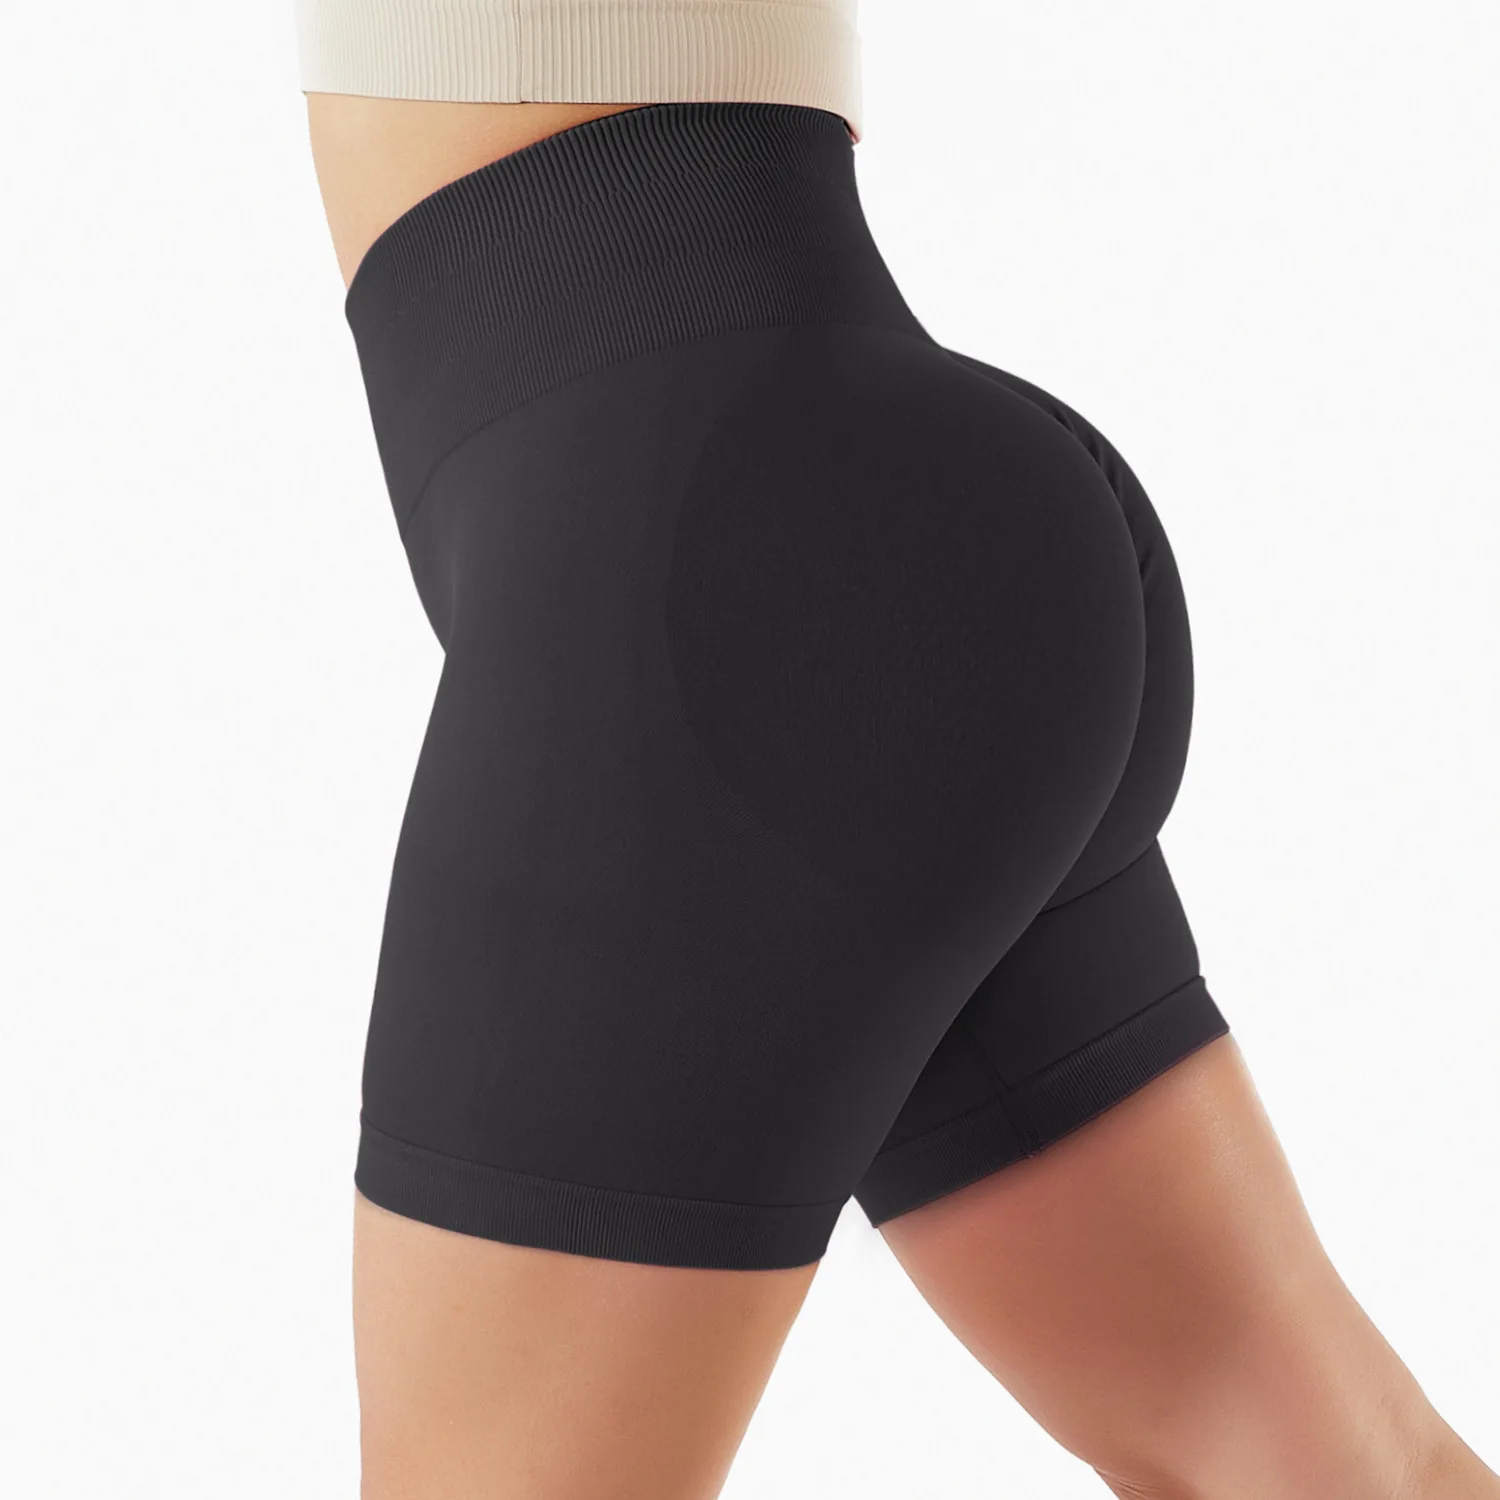 INS Hot Sale High Waist Tummy Control Workout Shorts Scrunch Butt Lift Sports Shorts High Elastic Seamless Biker Shorts Women